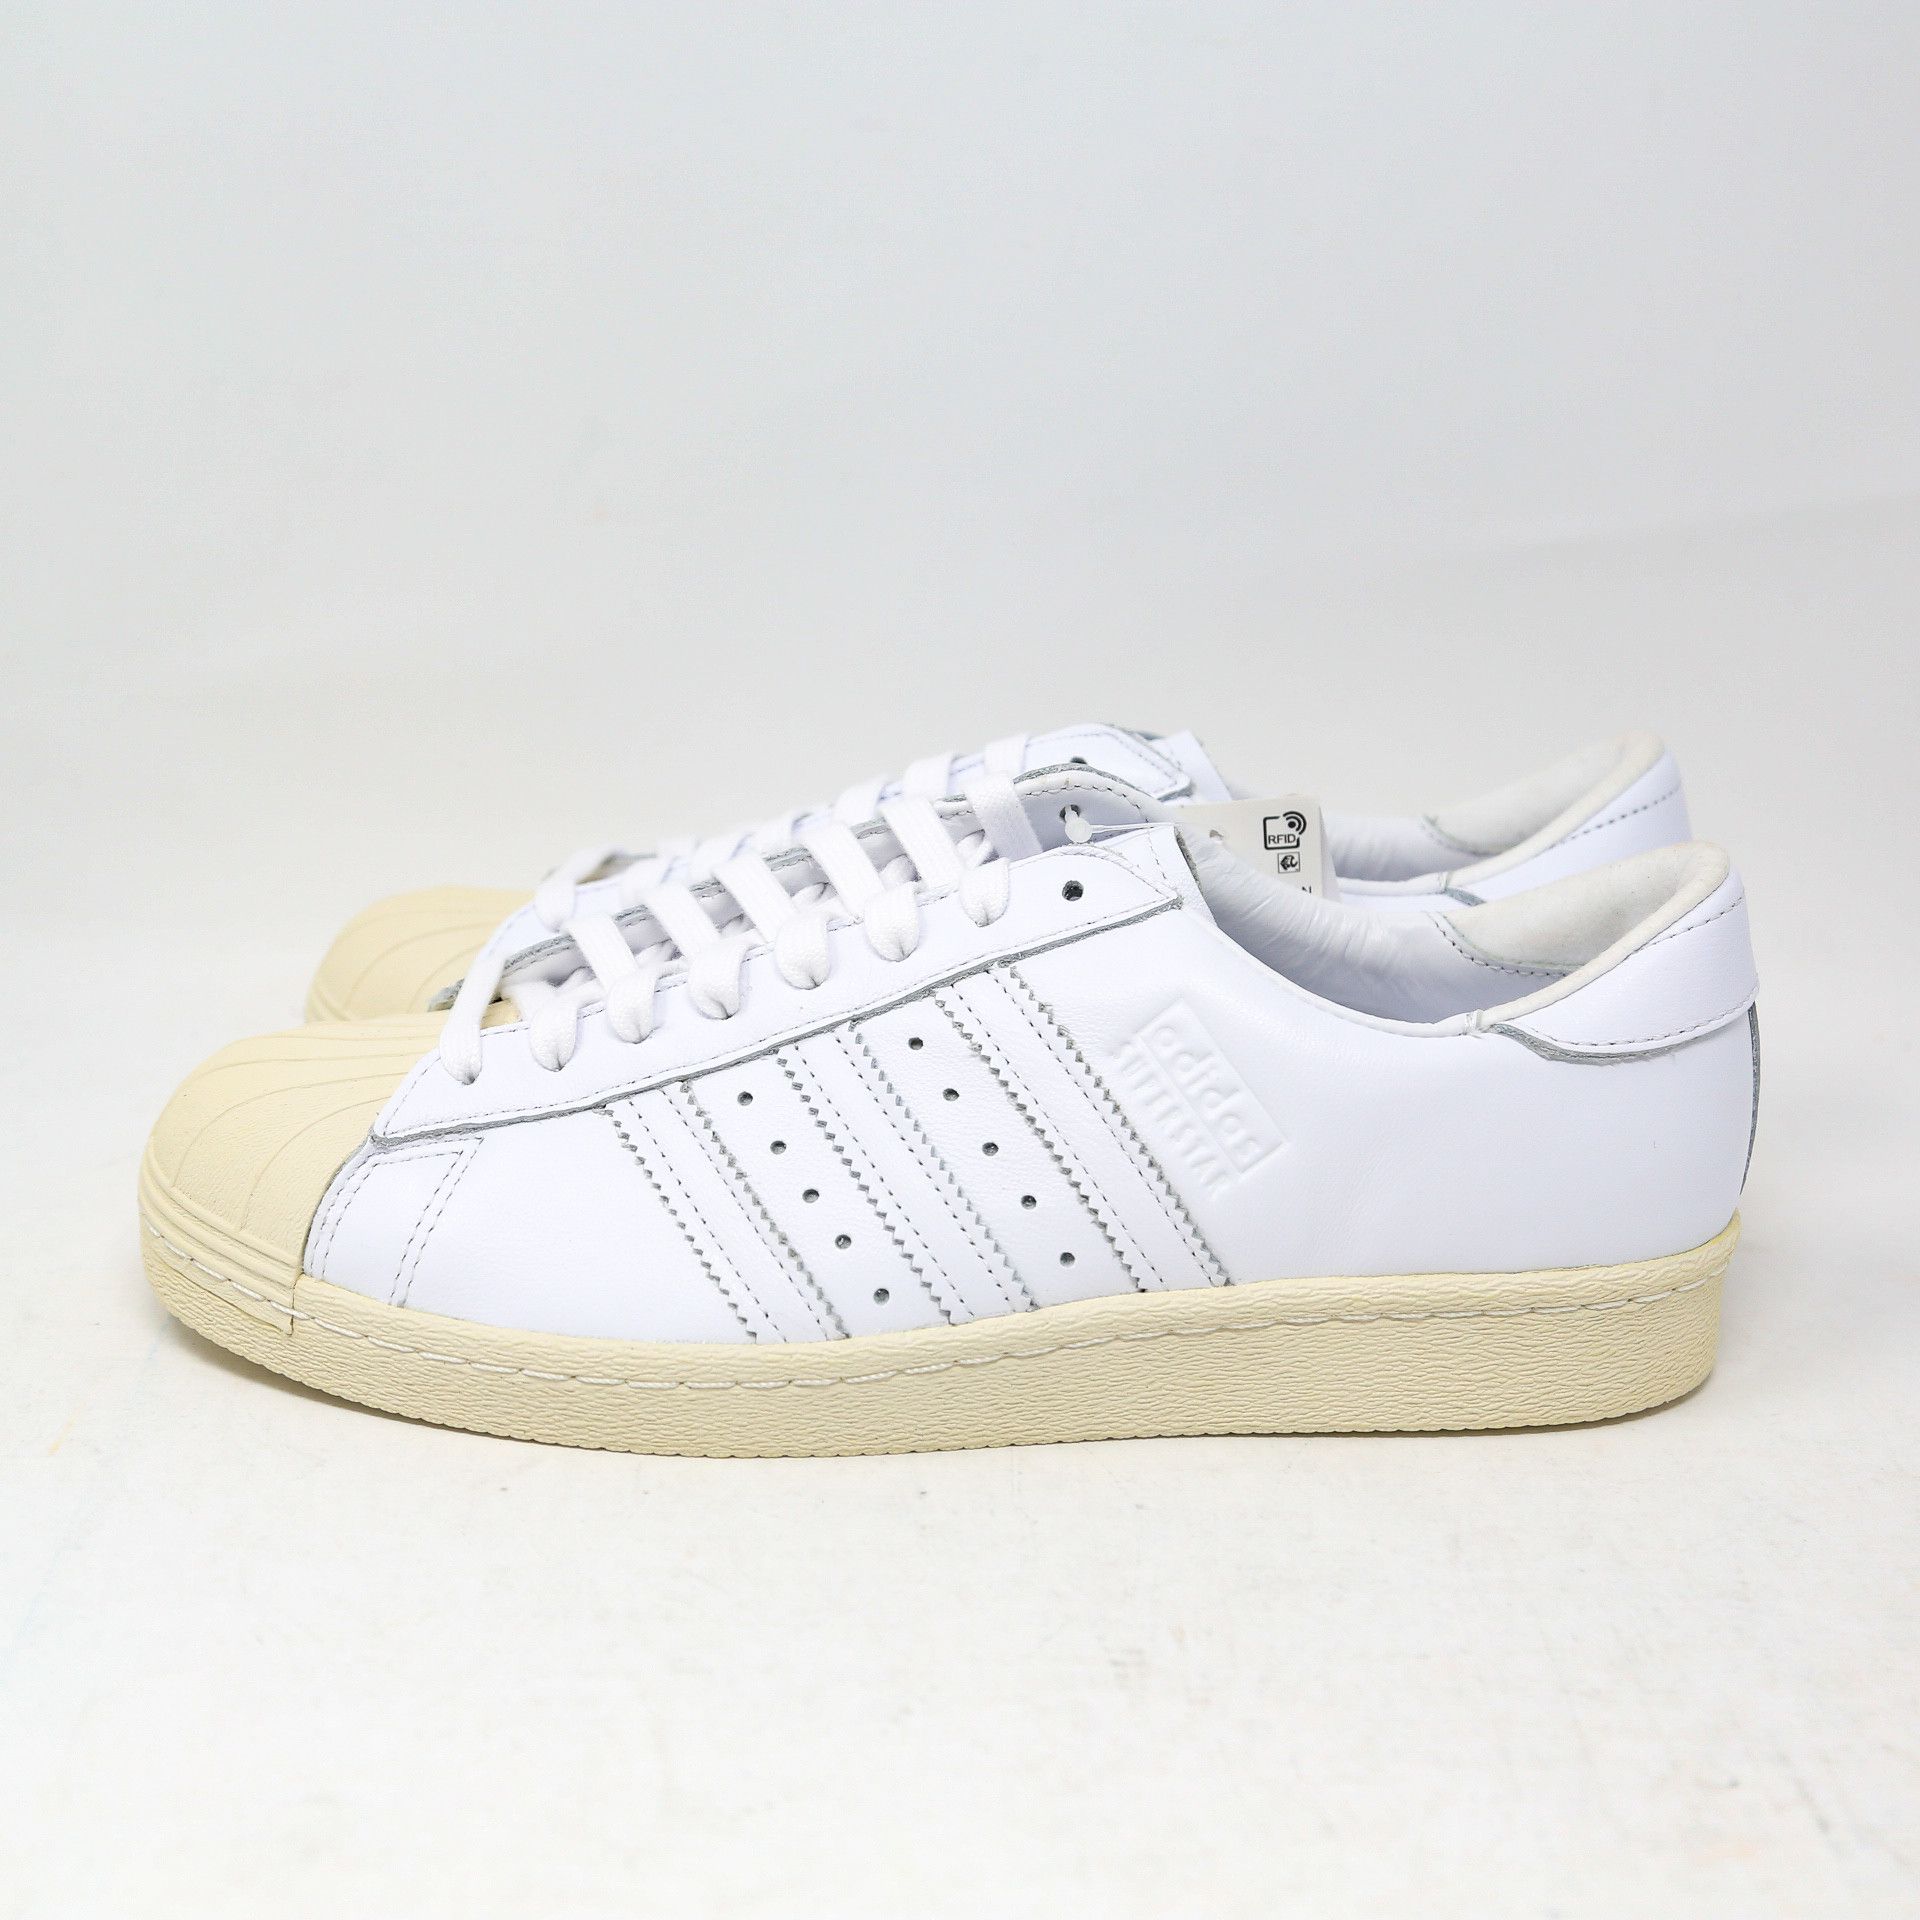 Adidas Superstar 80s Recon Off-White EE7392 Retro size 11 Size US 11 / EU 44 - 3 Thumbnail